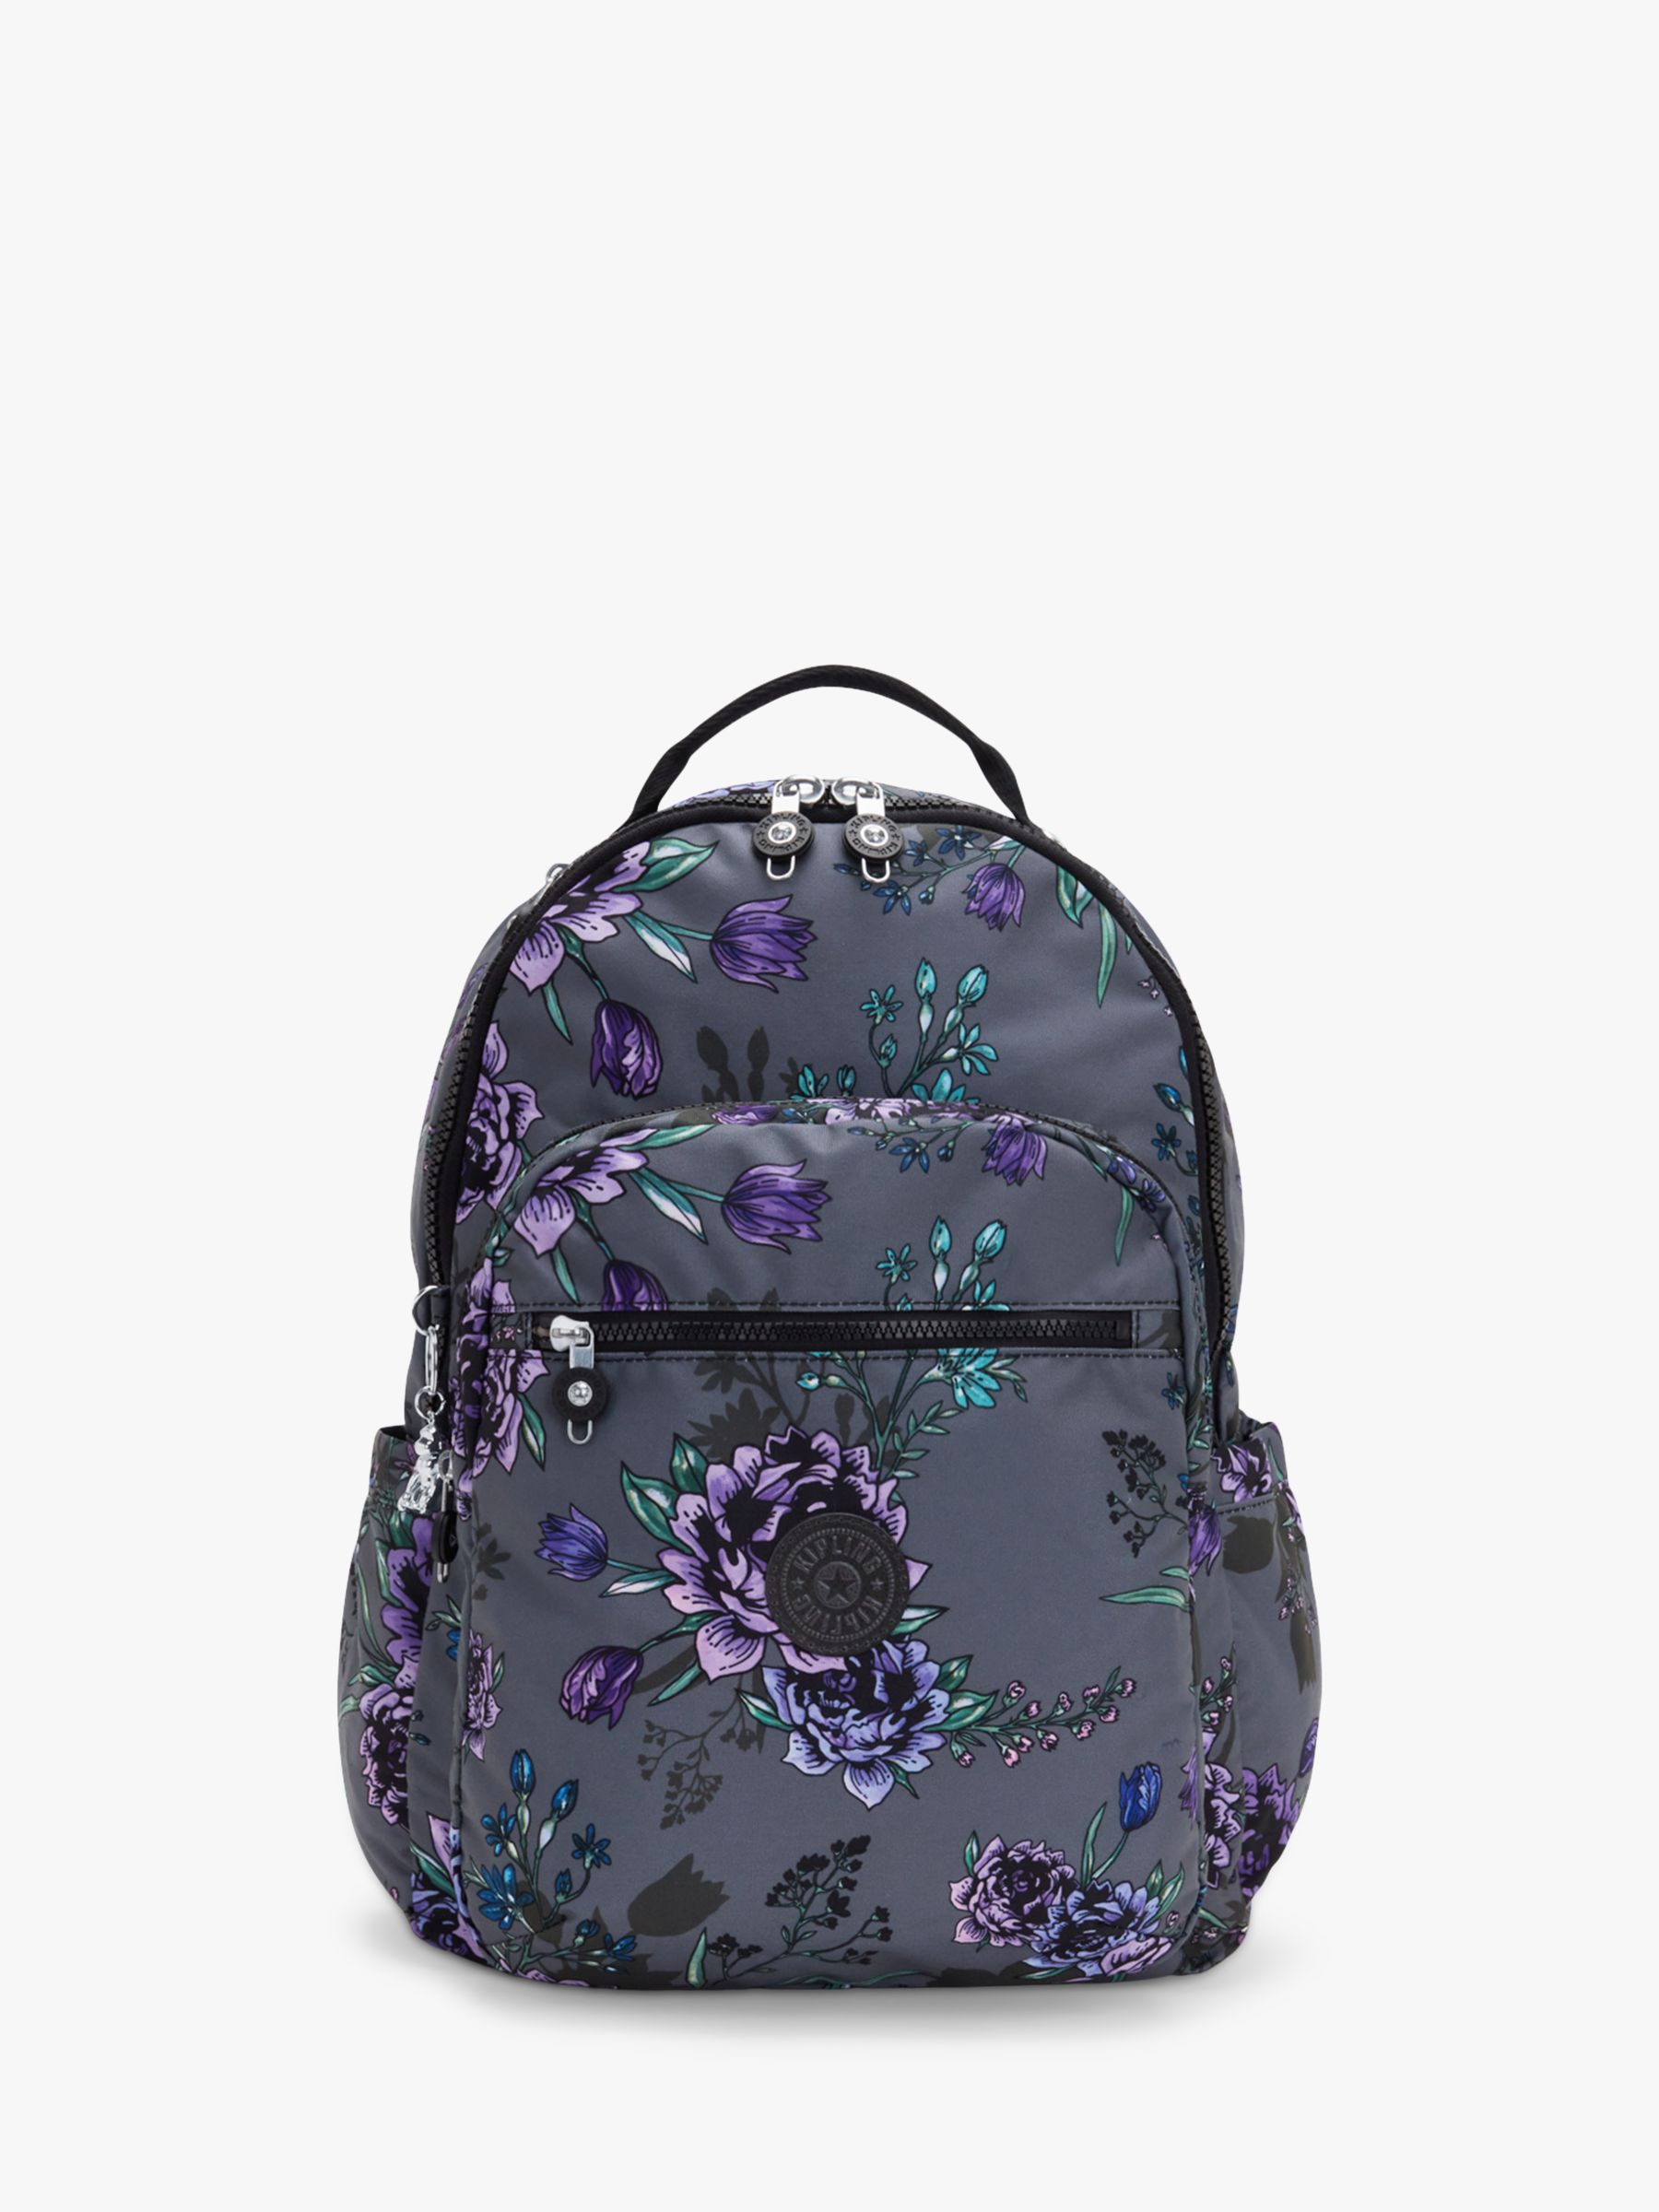 Kipling Seoul Dream Flower Print Large Backpack, Multi